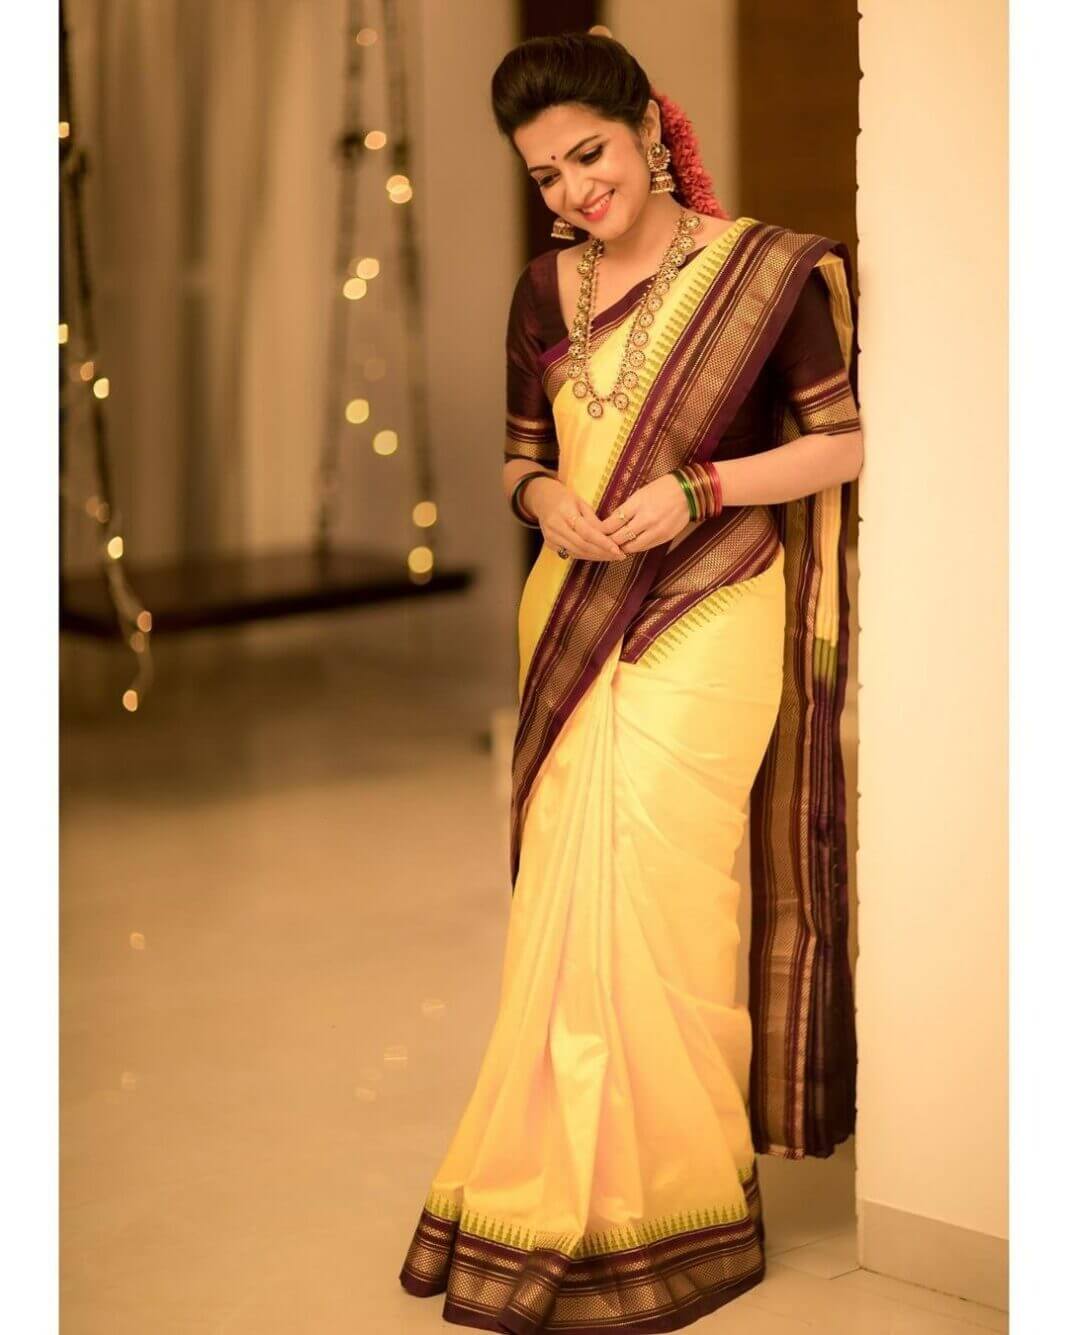 DD Neelakandan looking beautiful in a yellow silk saree! | Fashionworldhub